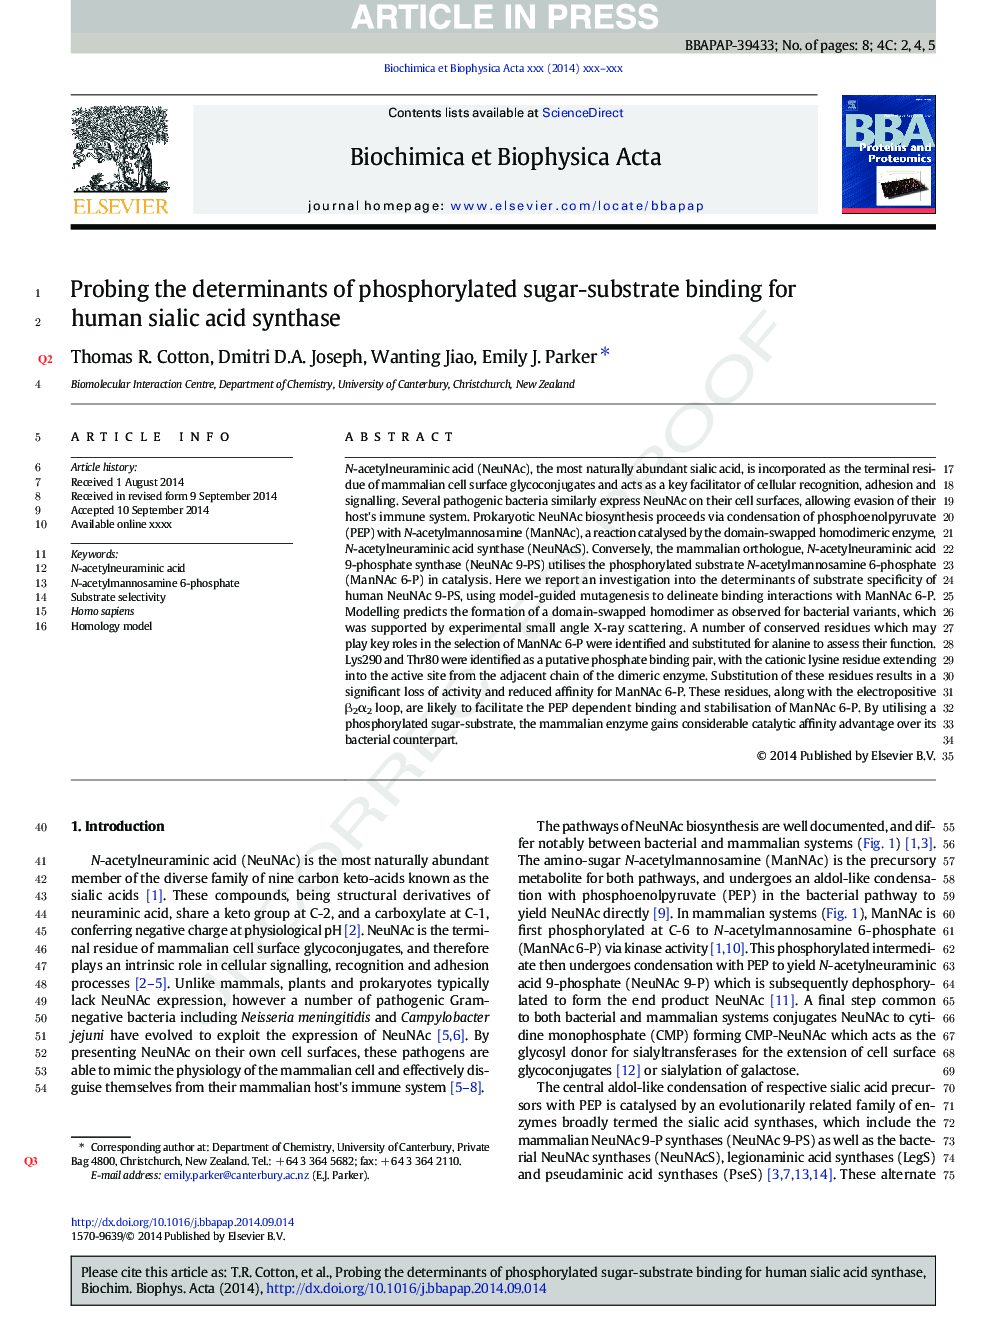 بررسی عوامل تعیین کننده اتصال چربی فسفریلیله شده برای سنتاز اسید سیالیک اسید 